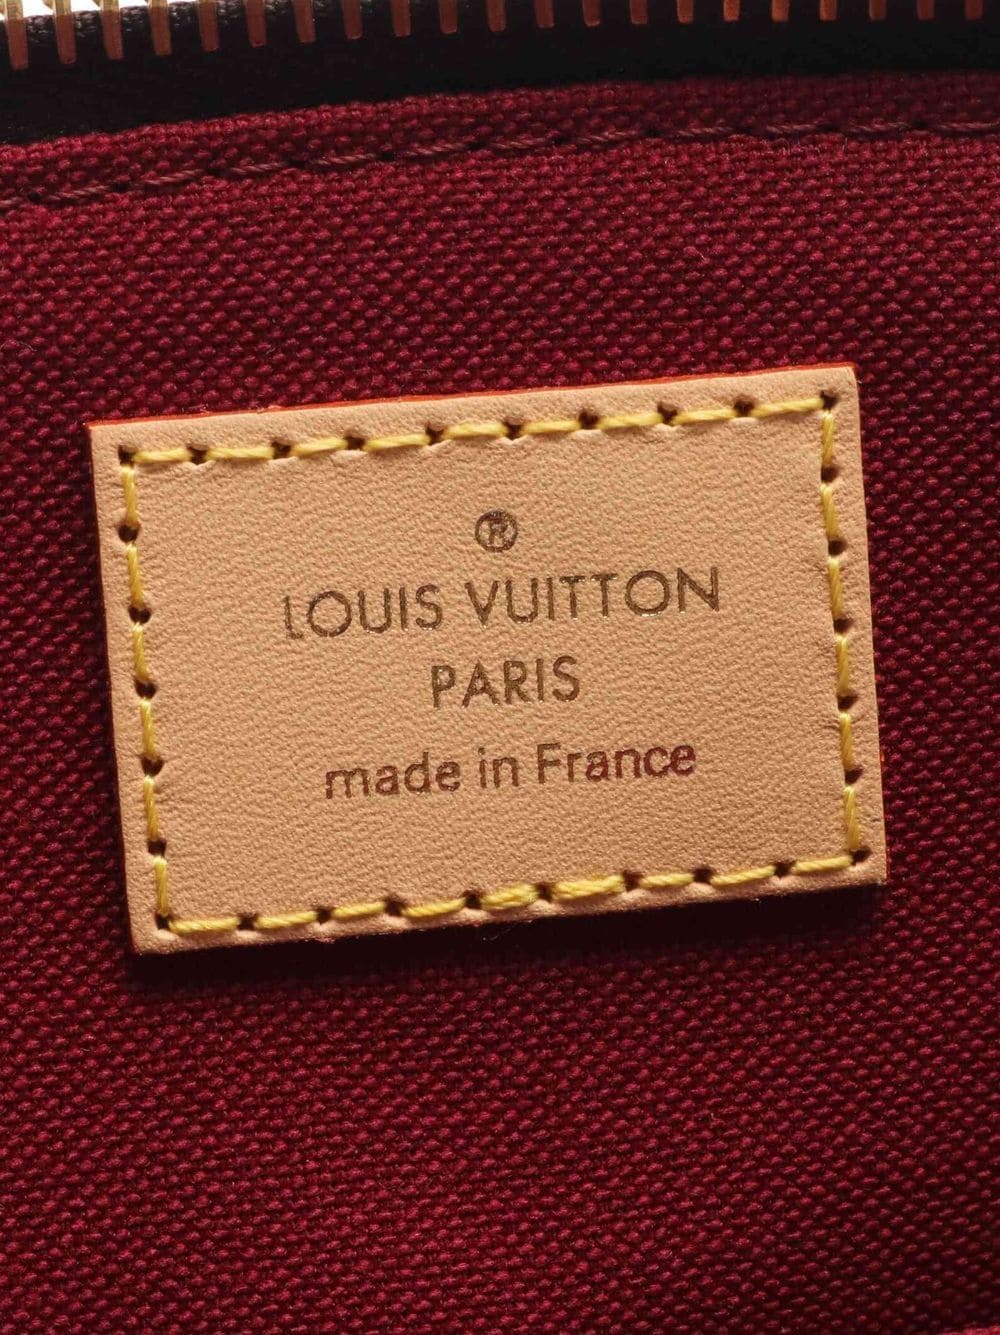 Louis Vuitton Petit Palais Bag - 2 For Sale on 1stDibs  petit palais louis  vuitton price, petit palais vuitton, petite palais lv